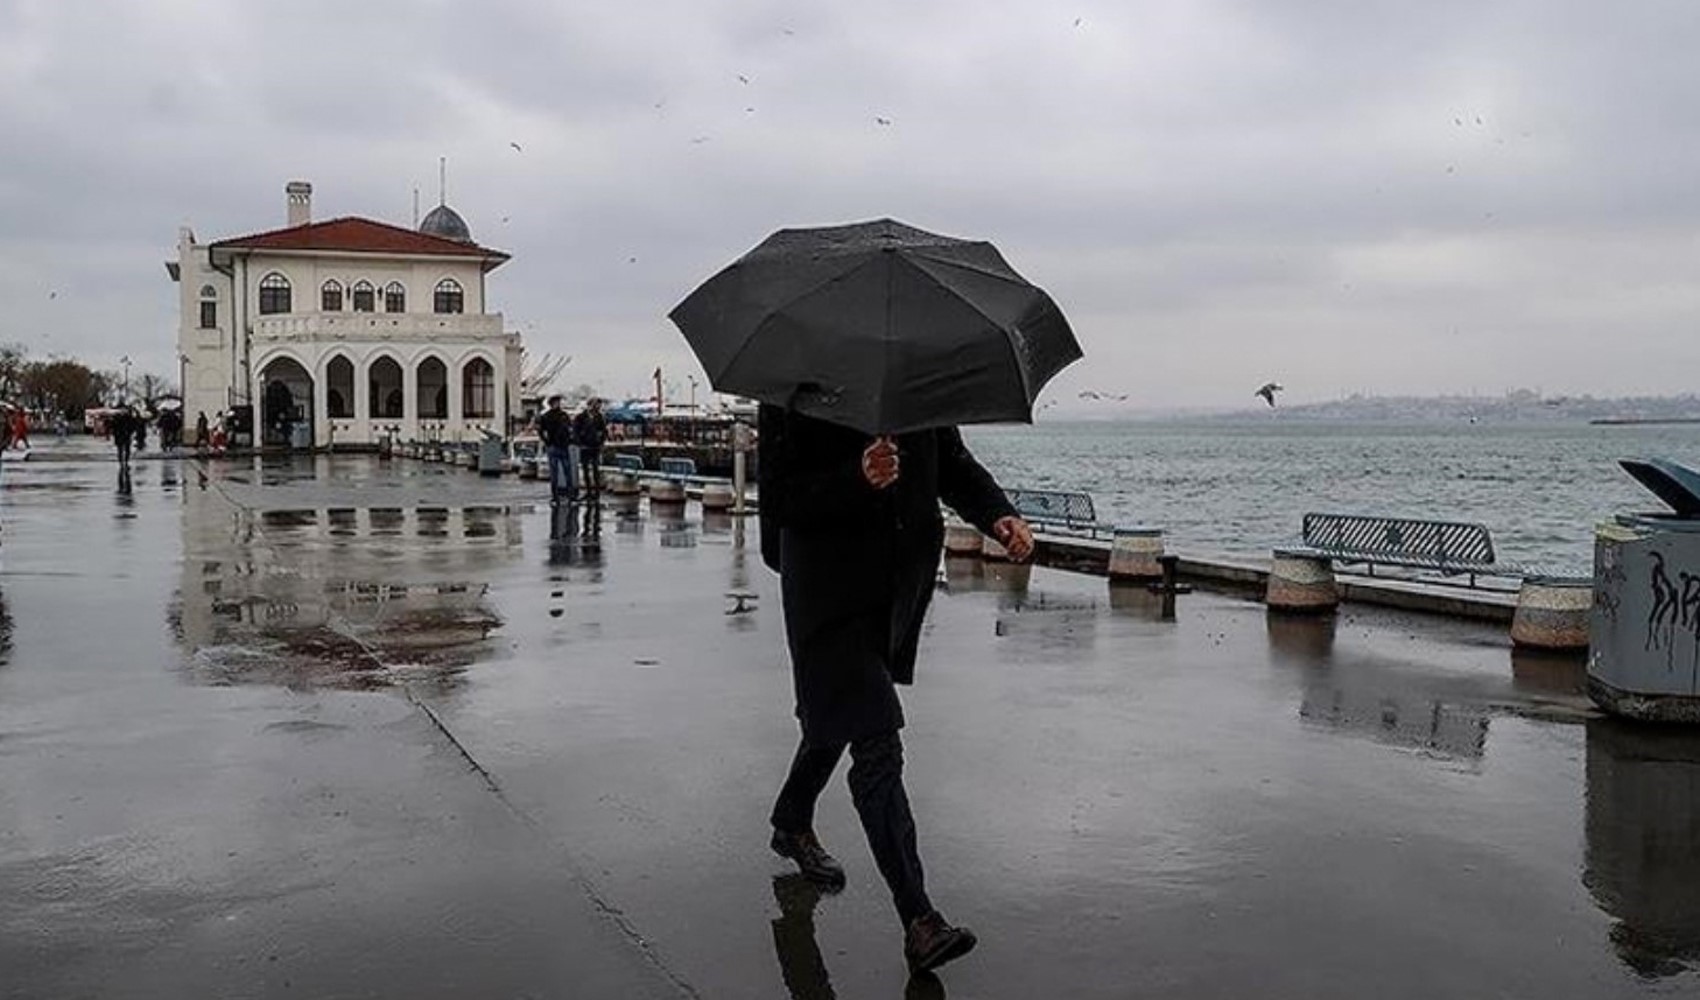 AKOM saat vererek İstanbulluları uyardı: Yağış etkisini artıracak